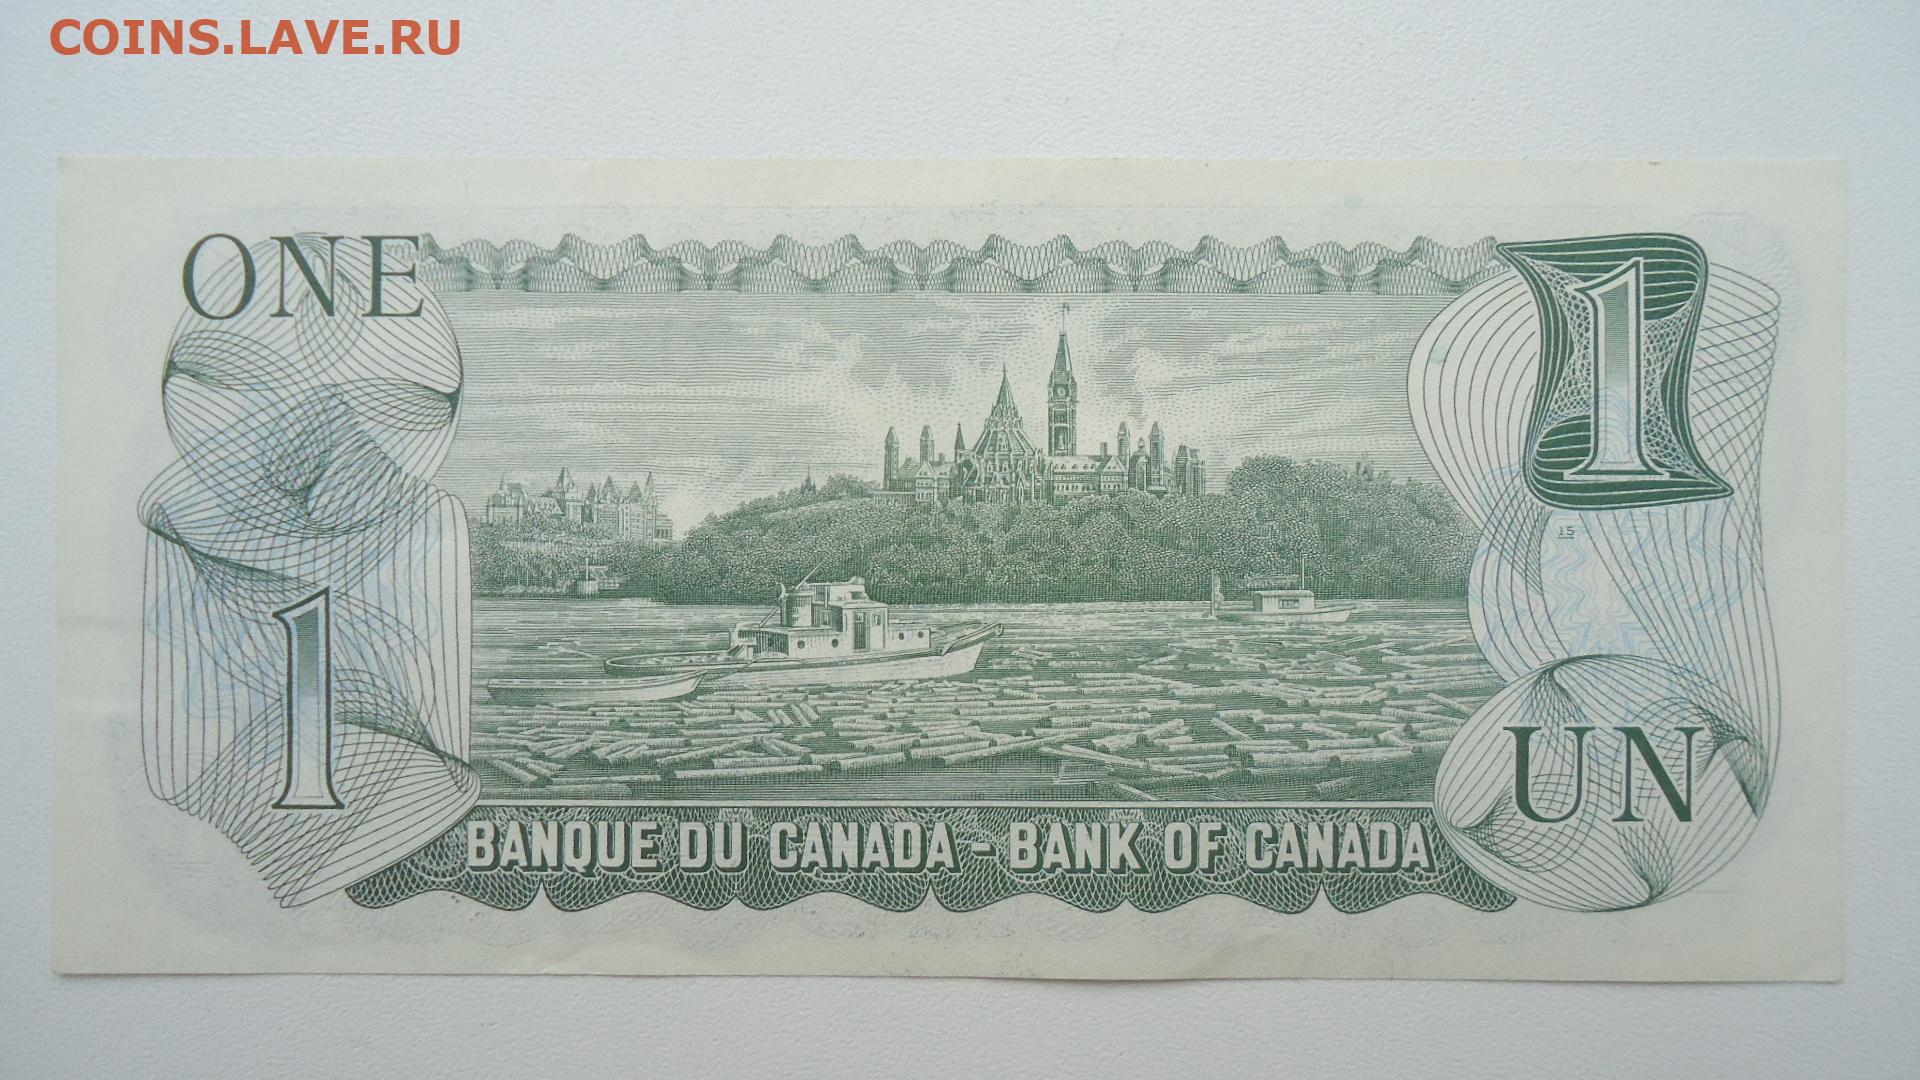 1 вопрос 1 доллар. Банкнота Канада 1 доллар 1973. 2 Доллара 1973 года.. Распечатка Канада доллары. 1 Доллар. Токен. Канада, Онтарио 1995.